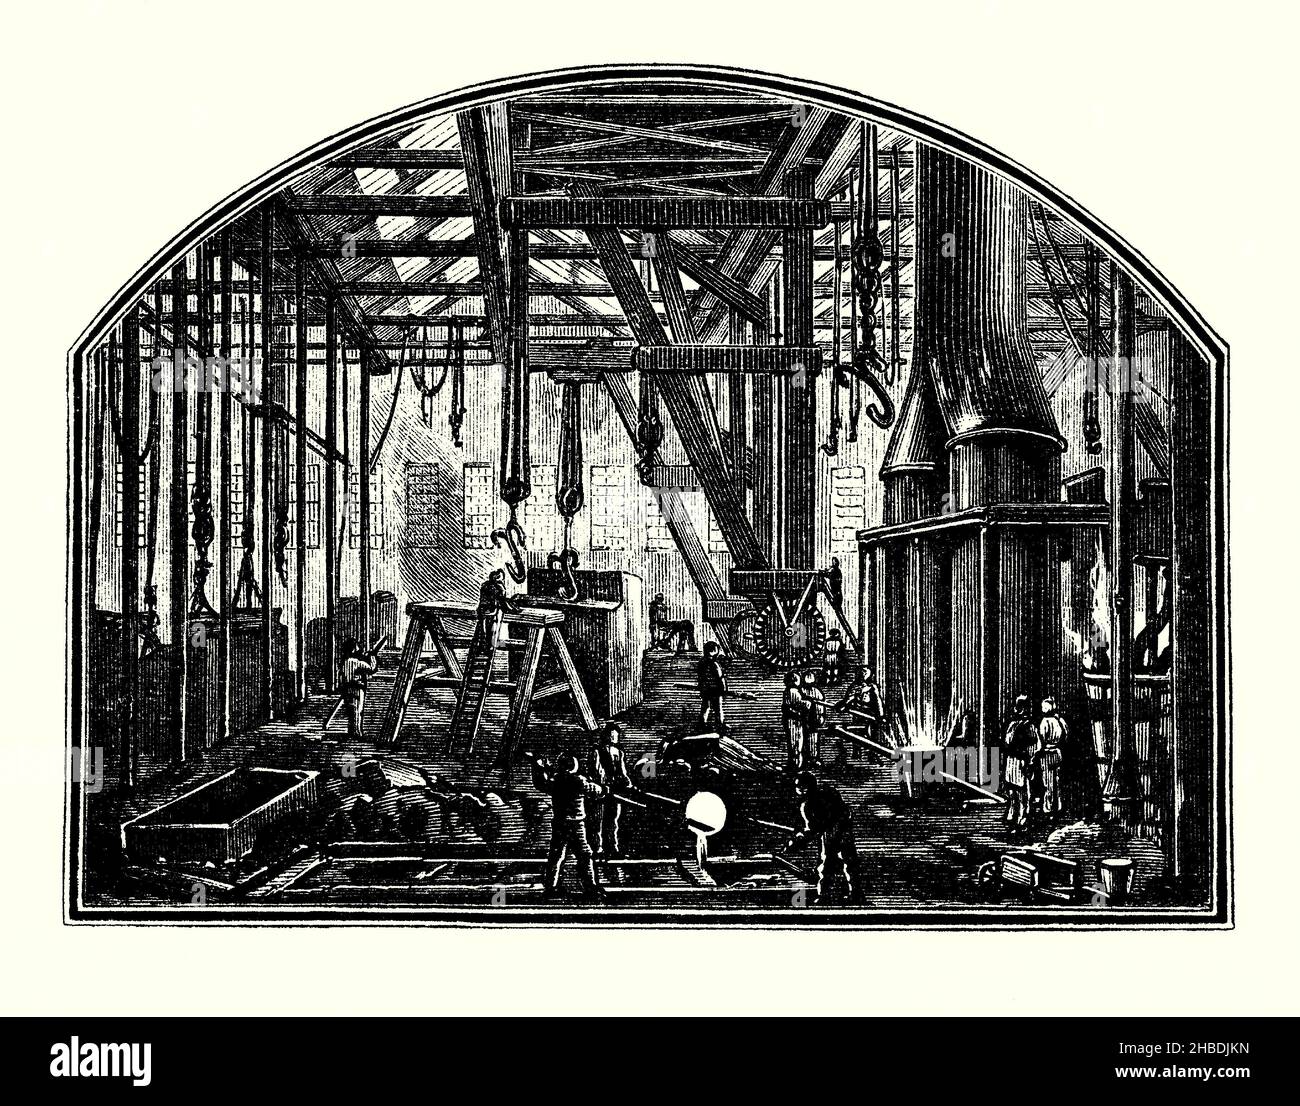 Gravure d'une ancienne fonderie de métal victorienne.Les fours pour la fusion du métal et les travailleurs de premier plan versent le métal fondu dans les moules sont illustrés à droite.Les grues et palans à manivelle sont clairement visibles.Il est tiré d'un livre victorien du 1890s sur les découvertes et les inventions pendant le 1800s.Une fonderie est une usine ou un atelier qui produit des pièces de fonderie métalliques.Les métaux sont moulés dans des formes en les faisant fondre dans un four dans un liquide, en versant le métal dans un moule et en retirant le matériau du moule après que le métal refroidi ait solidifié en laissant le métal moulé dans la forme ou la conception requise. Banque D'Images